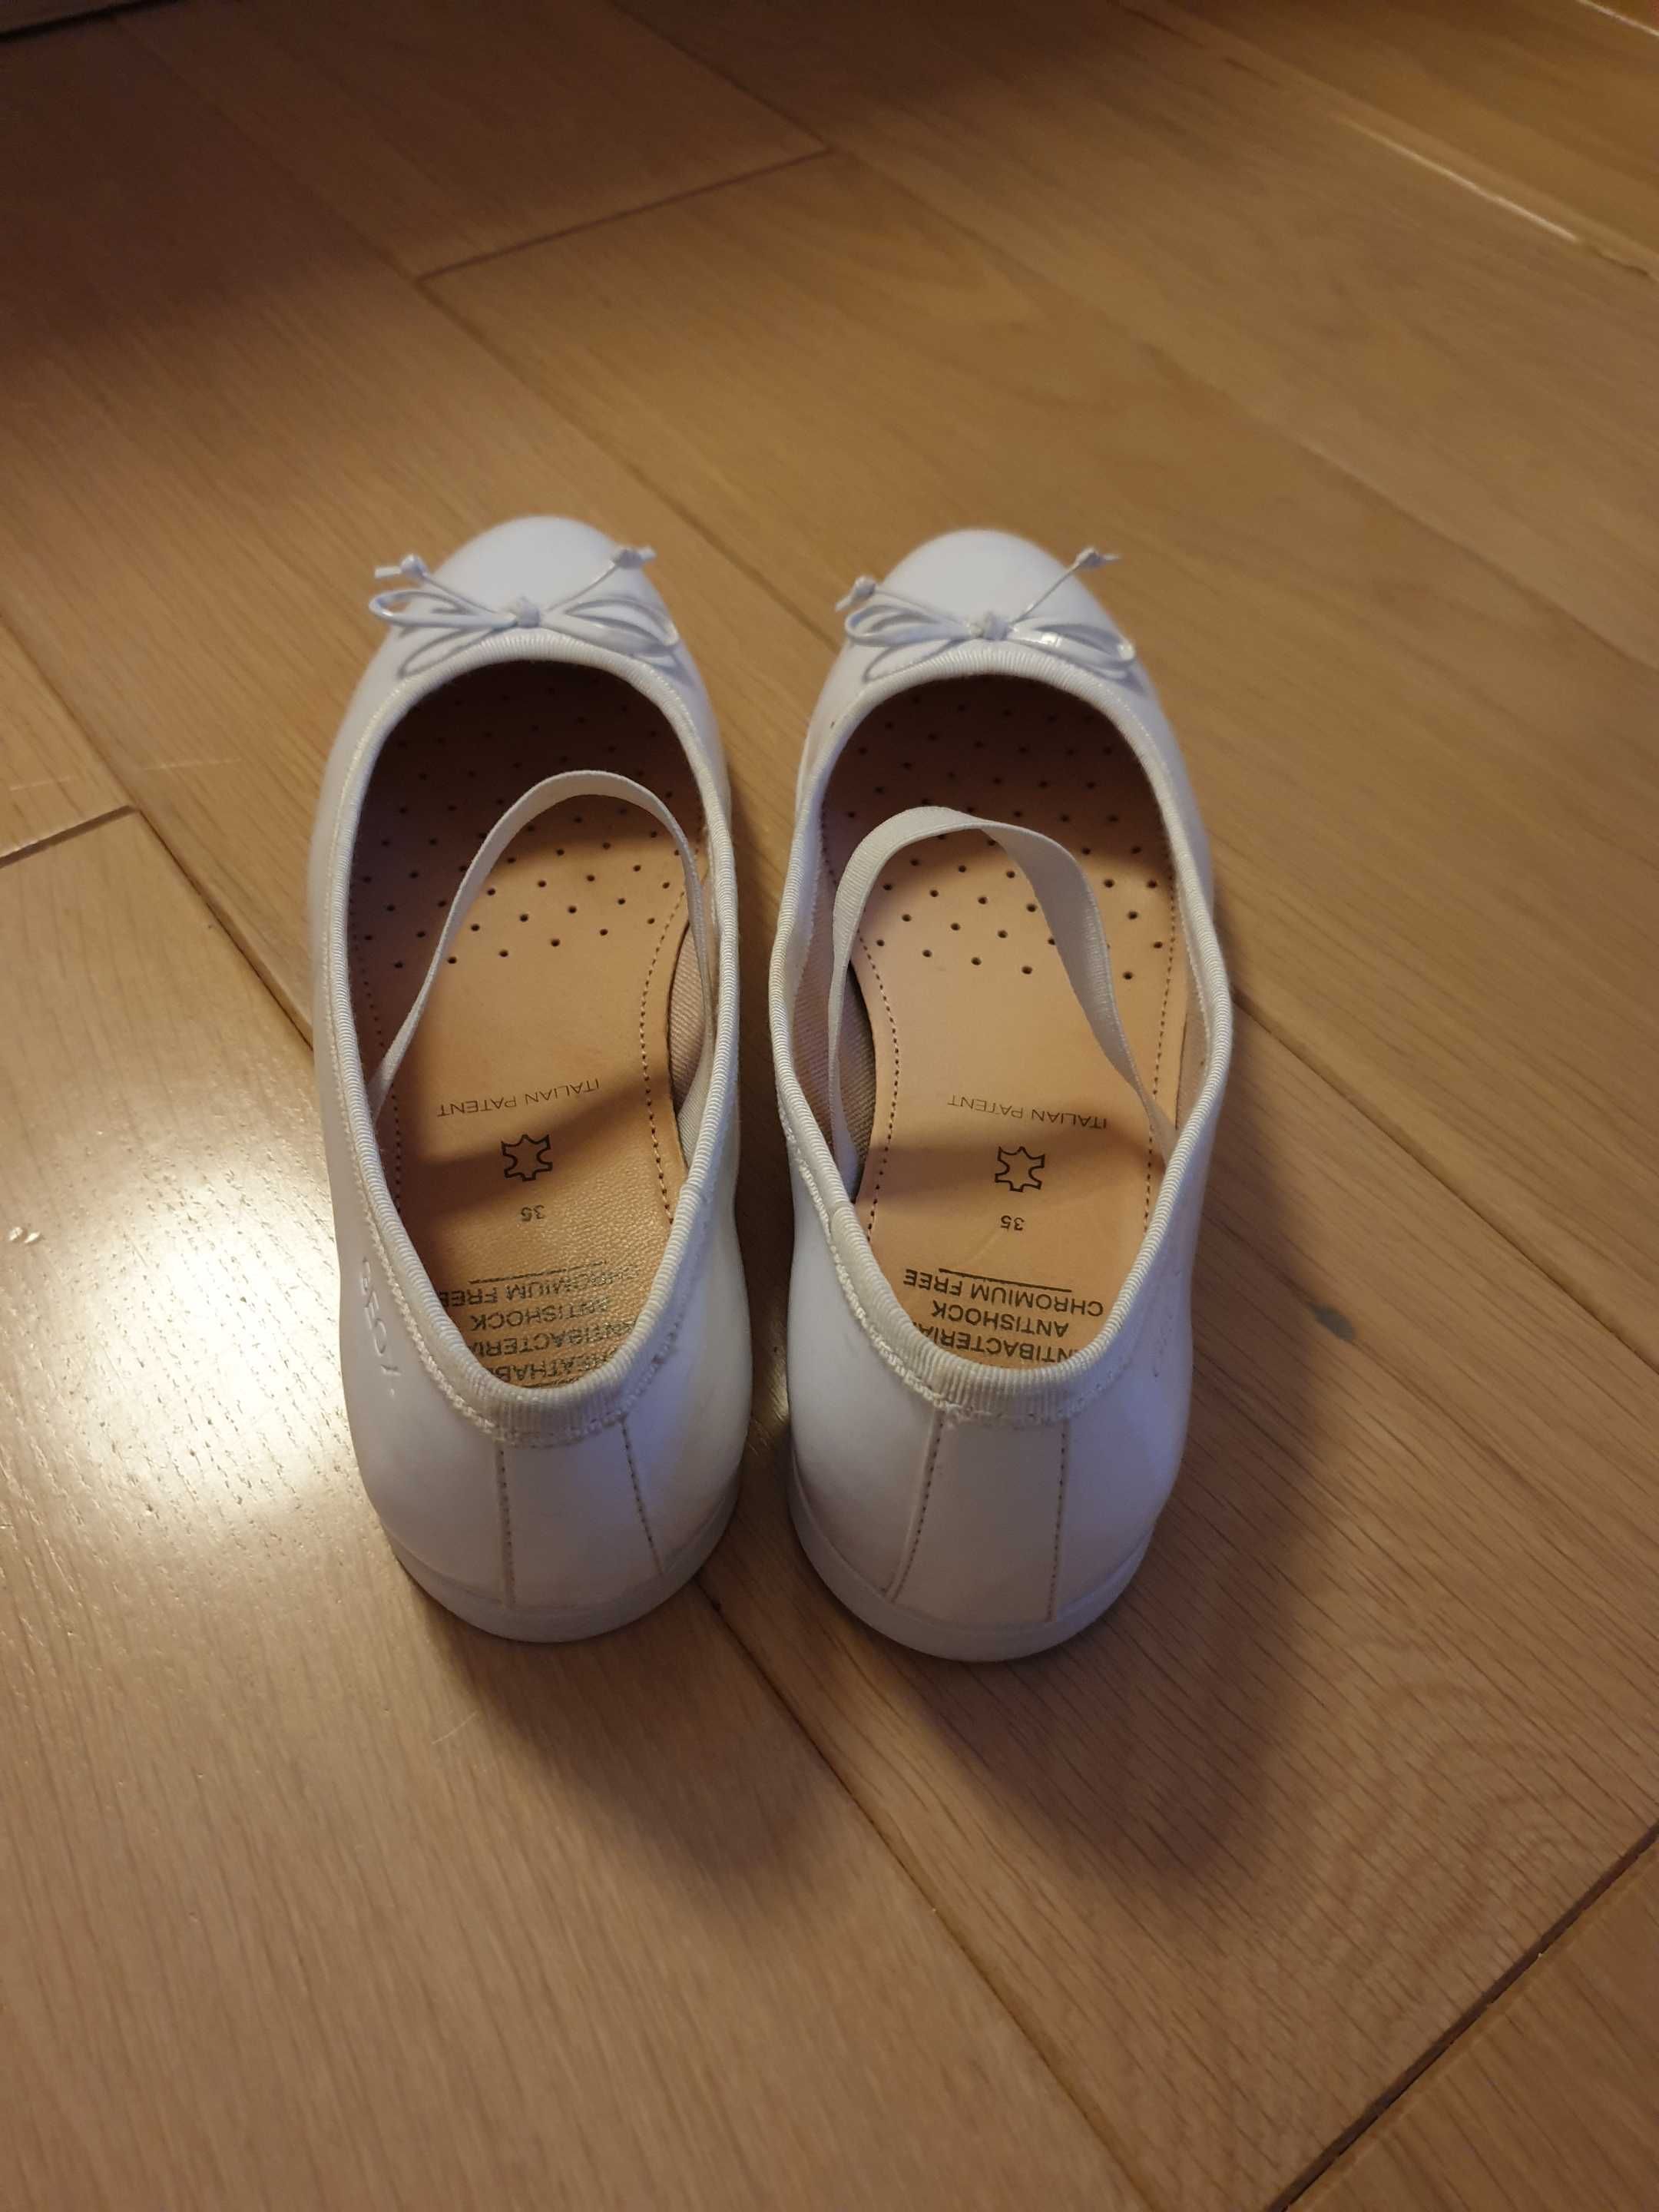 GEOX buty komunijne r.35 białe lakierki dziewczęce super stan